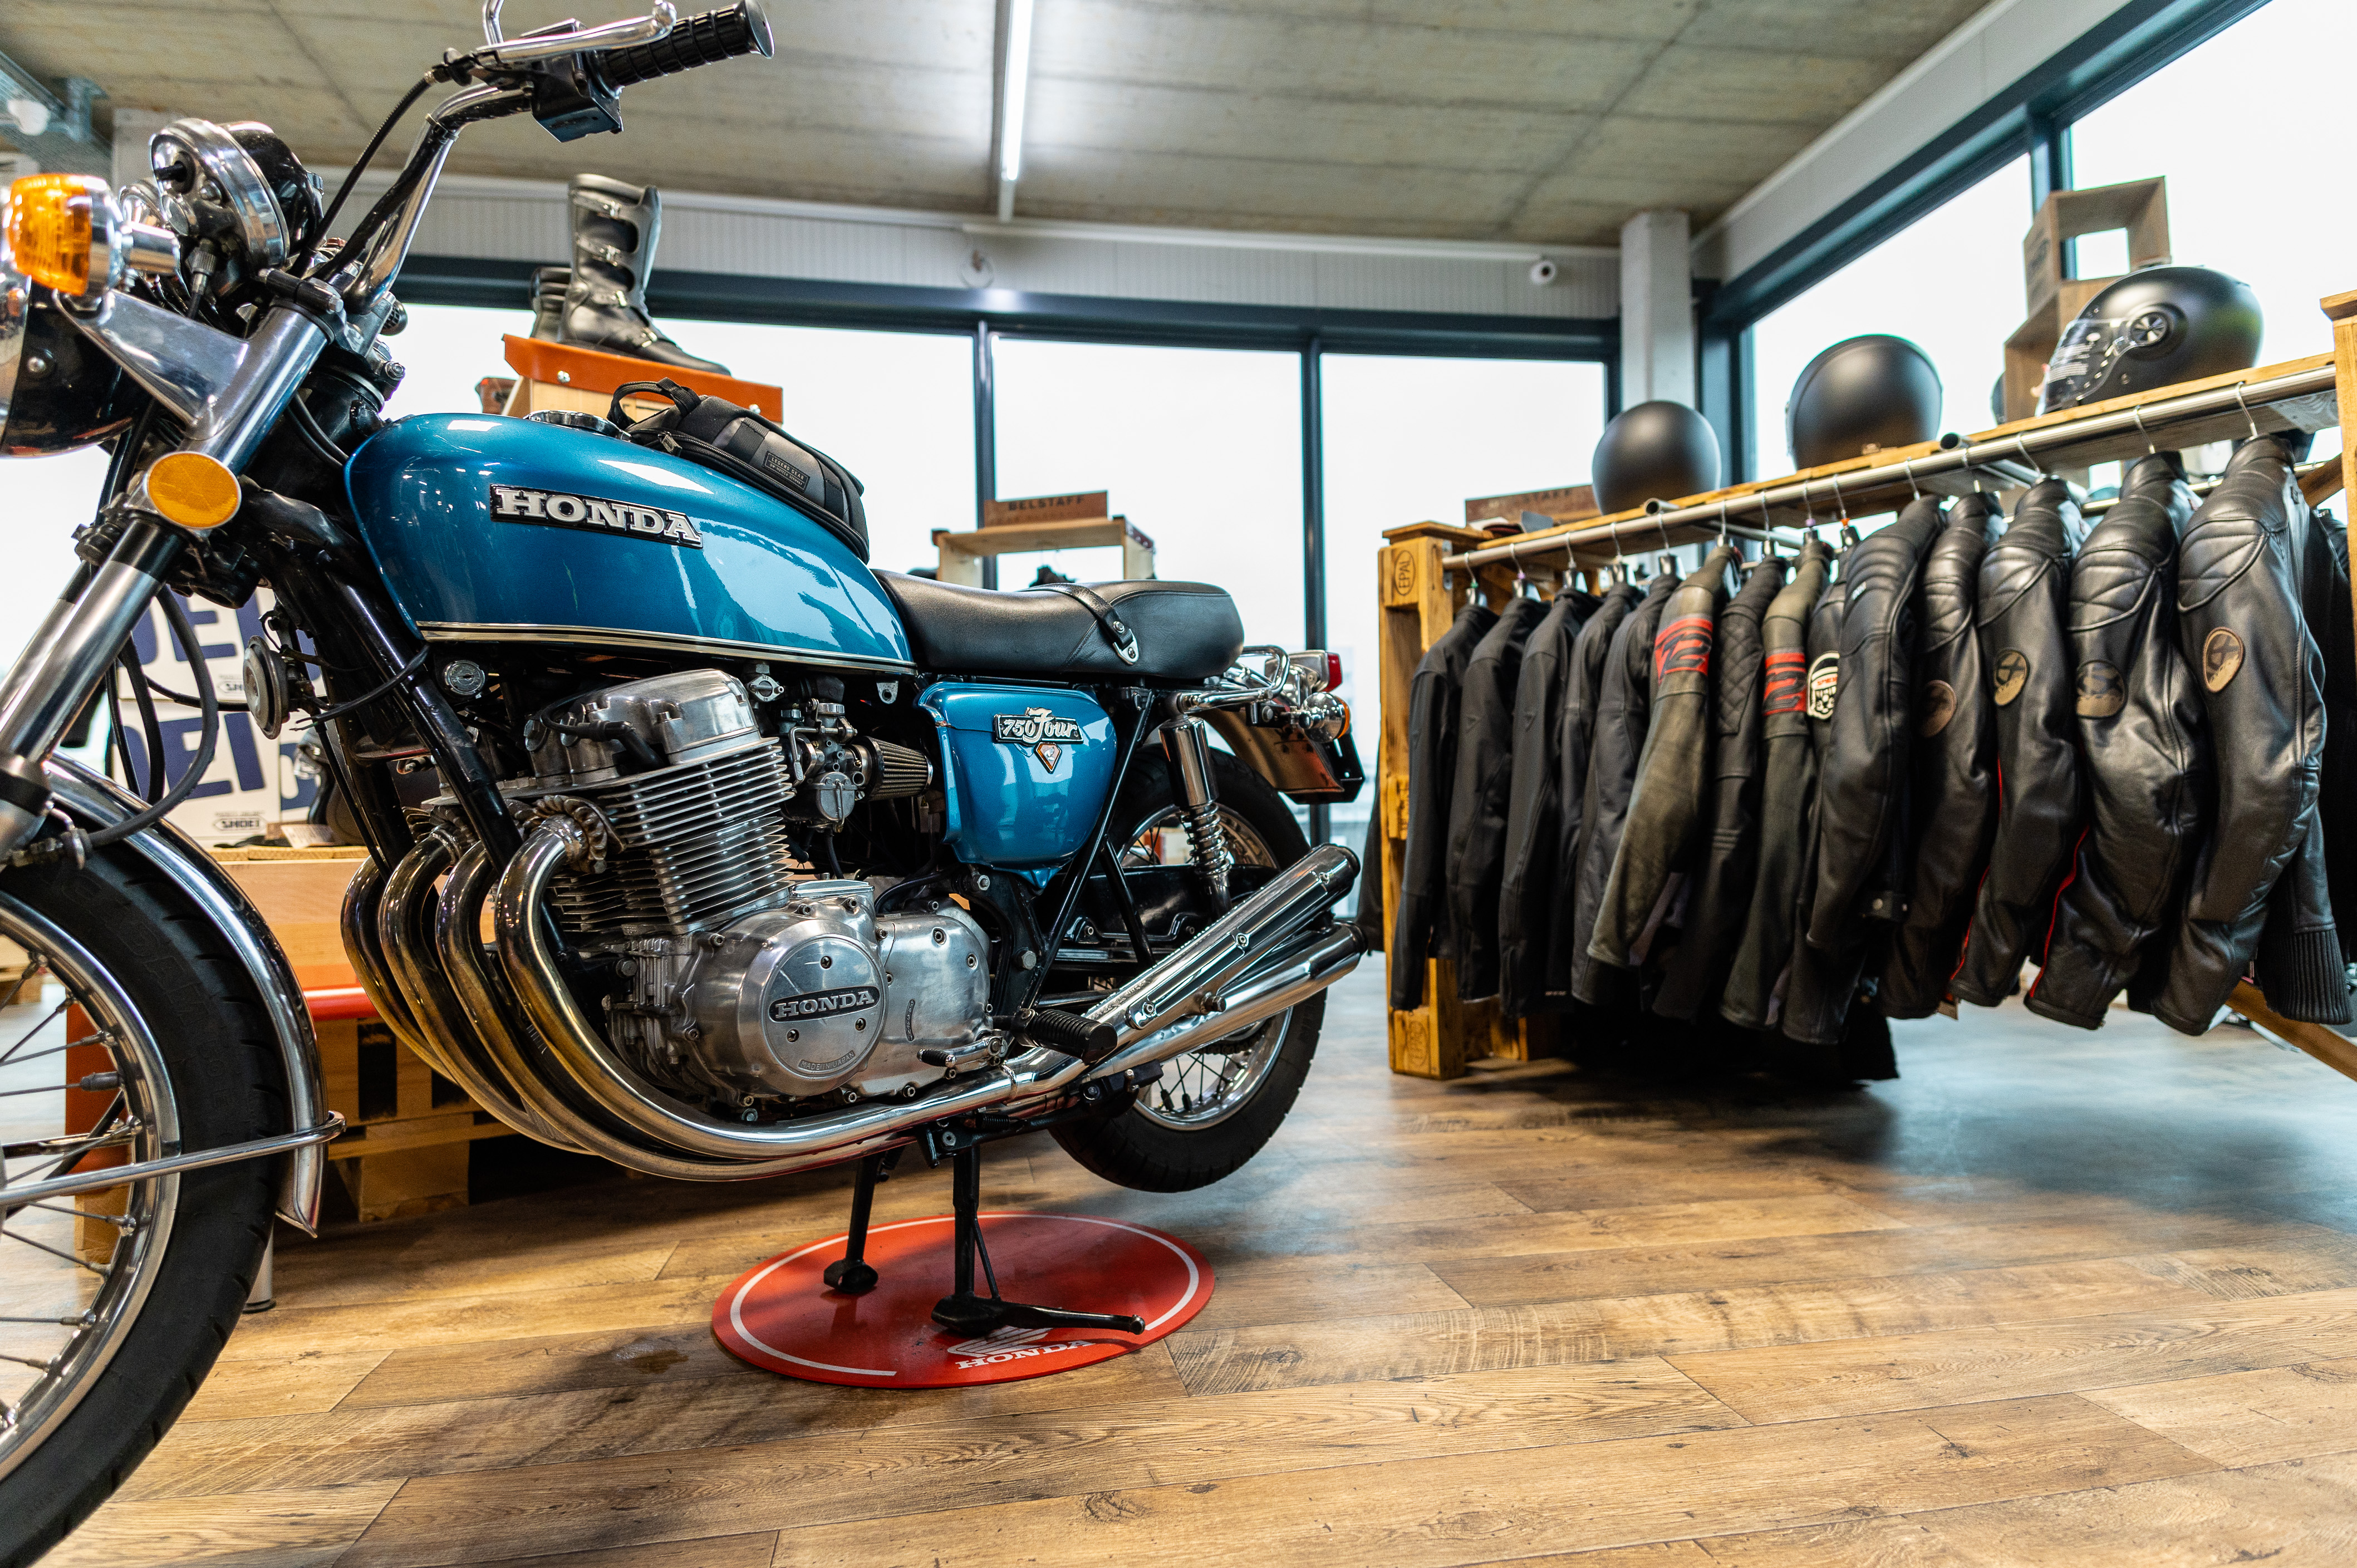 Découvrez nos produits dans notre magasin d'accessoires de moto